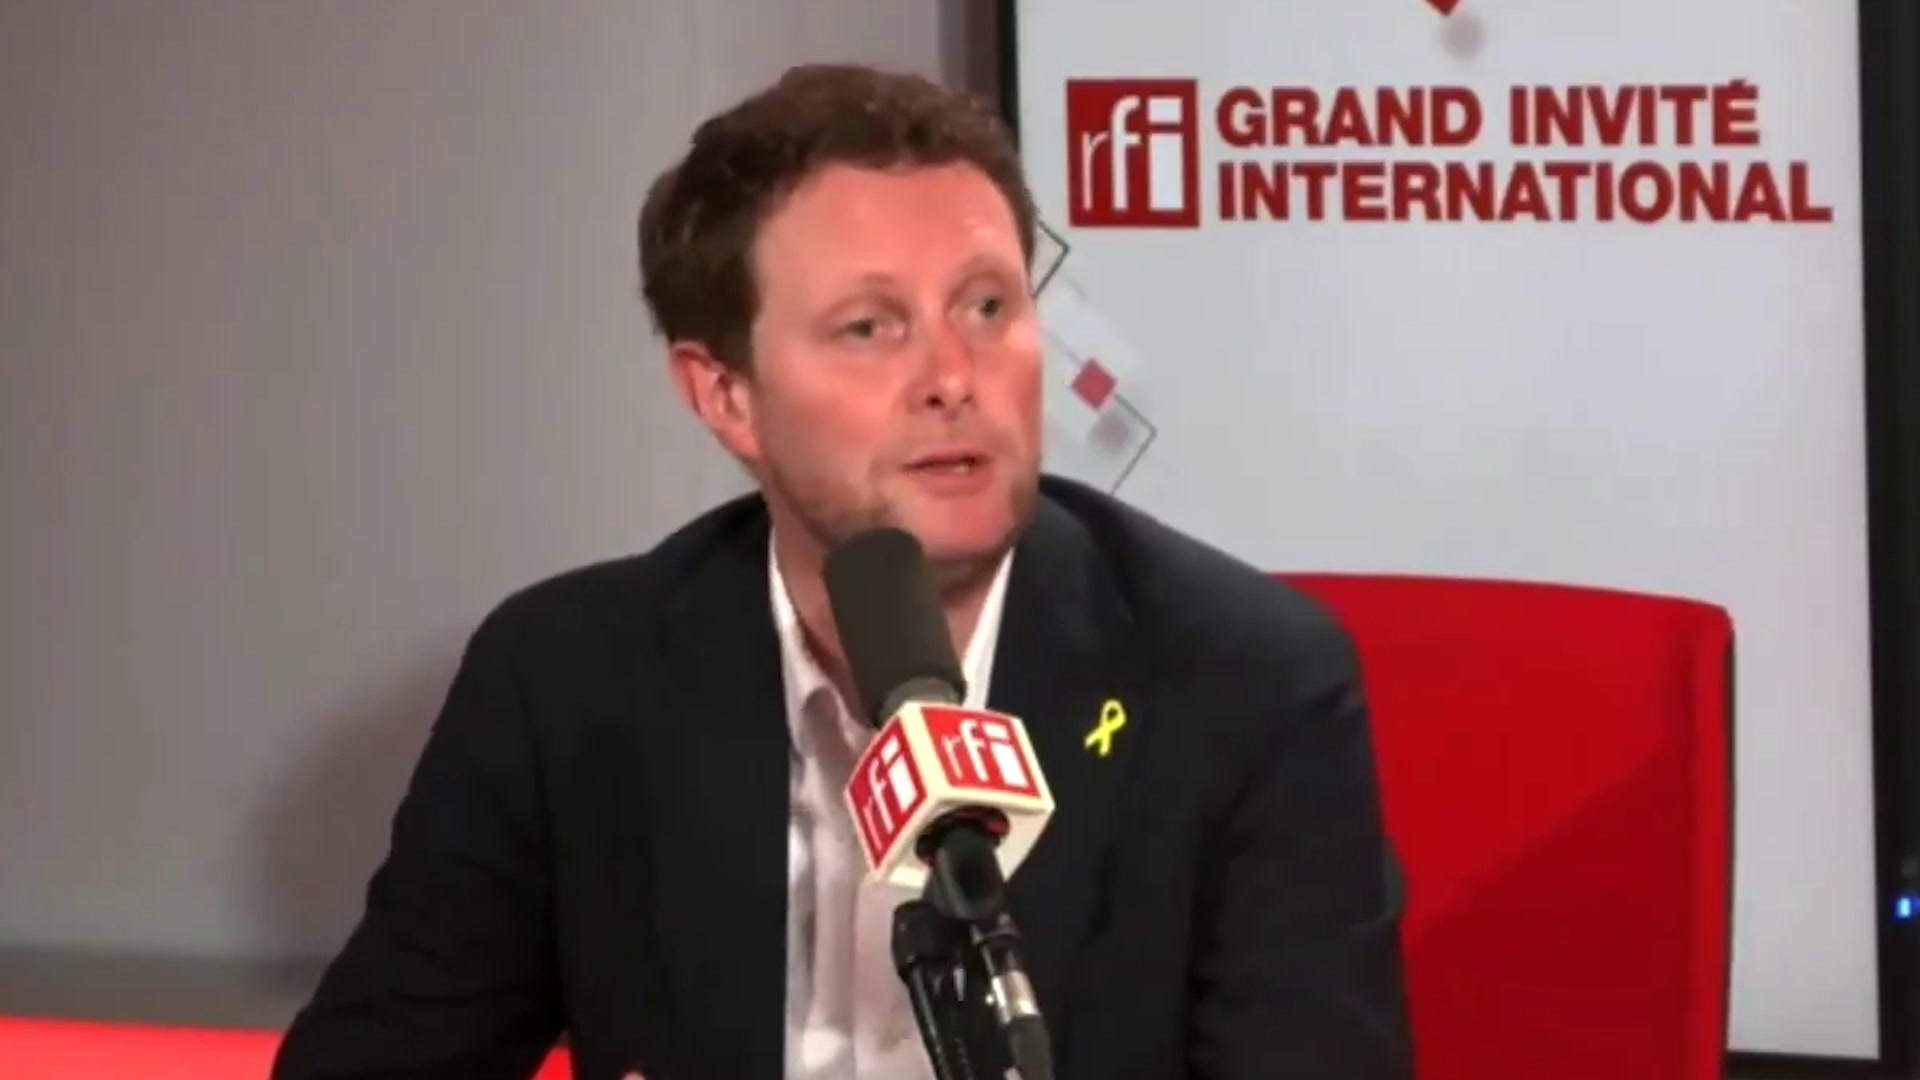 Il ne faut pas agiter de menaces, estime Clément Beaune après les propos d’Emmanuel Macron sur la guerre civile